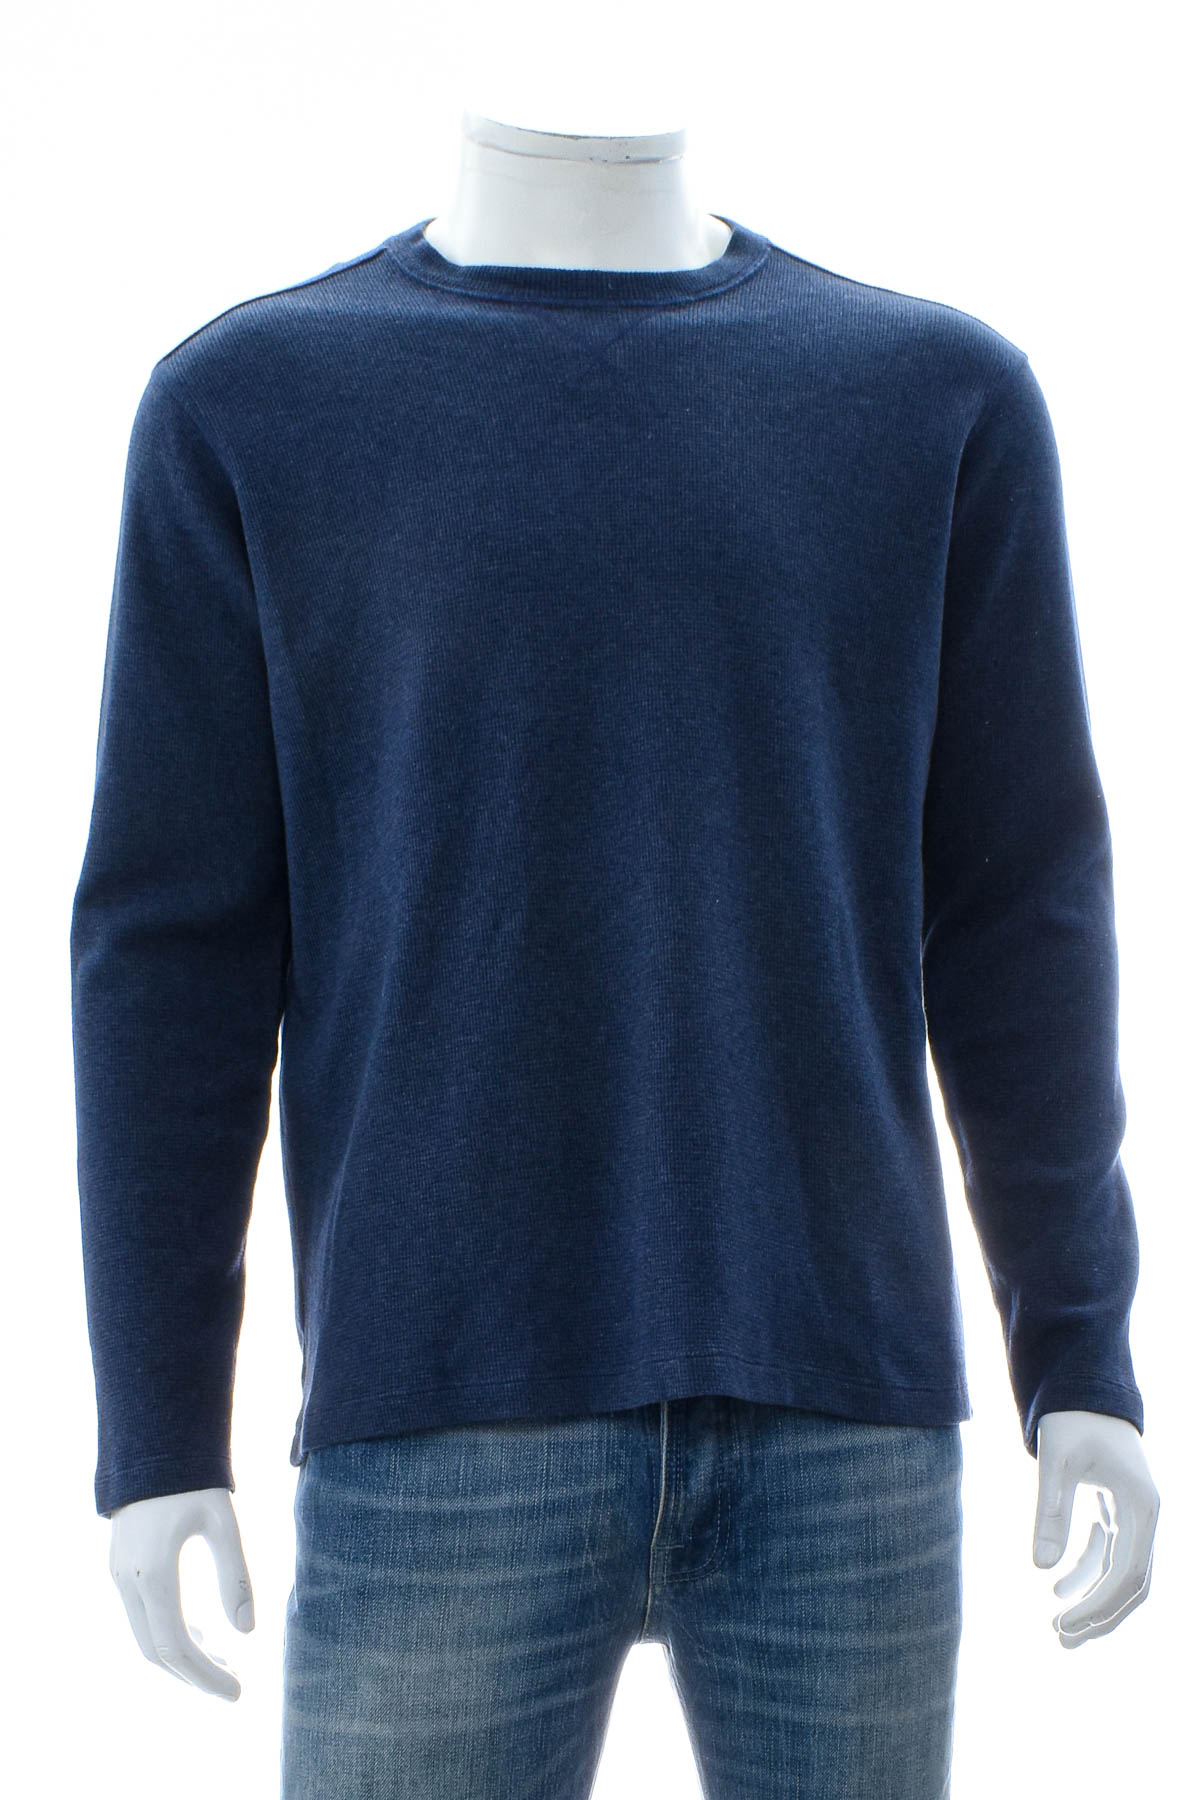 Men's sweater - BONOBOS - 0